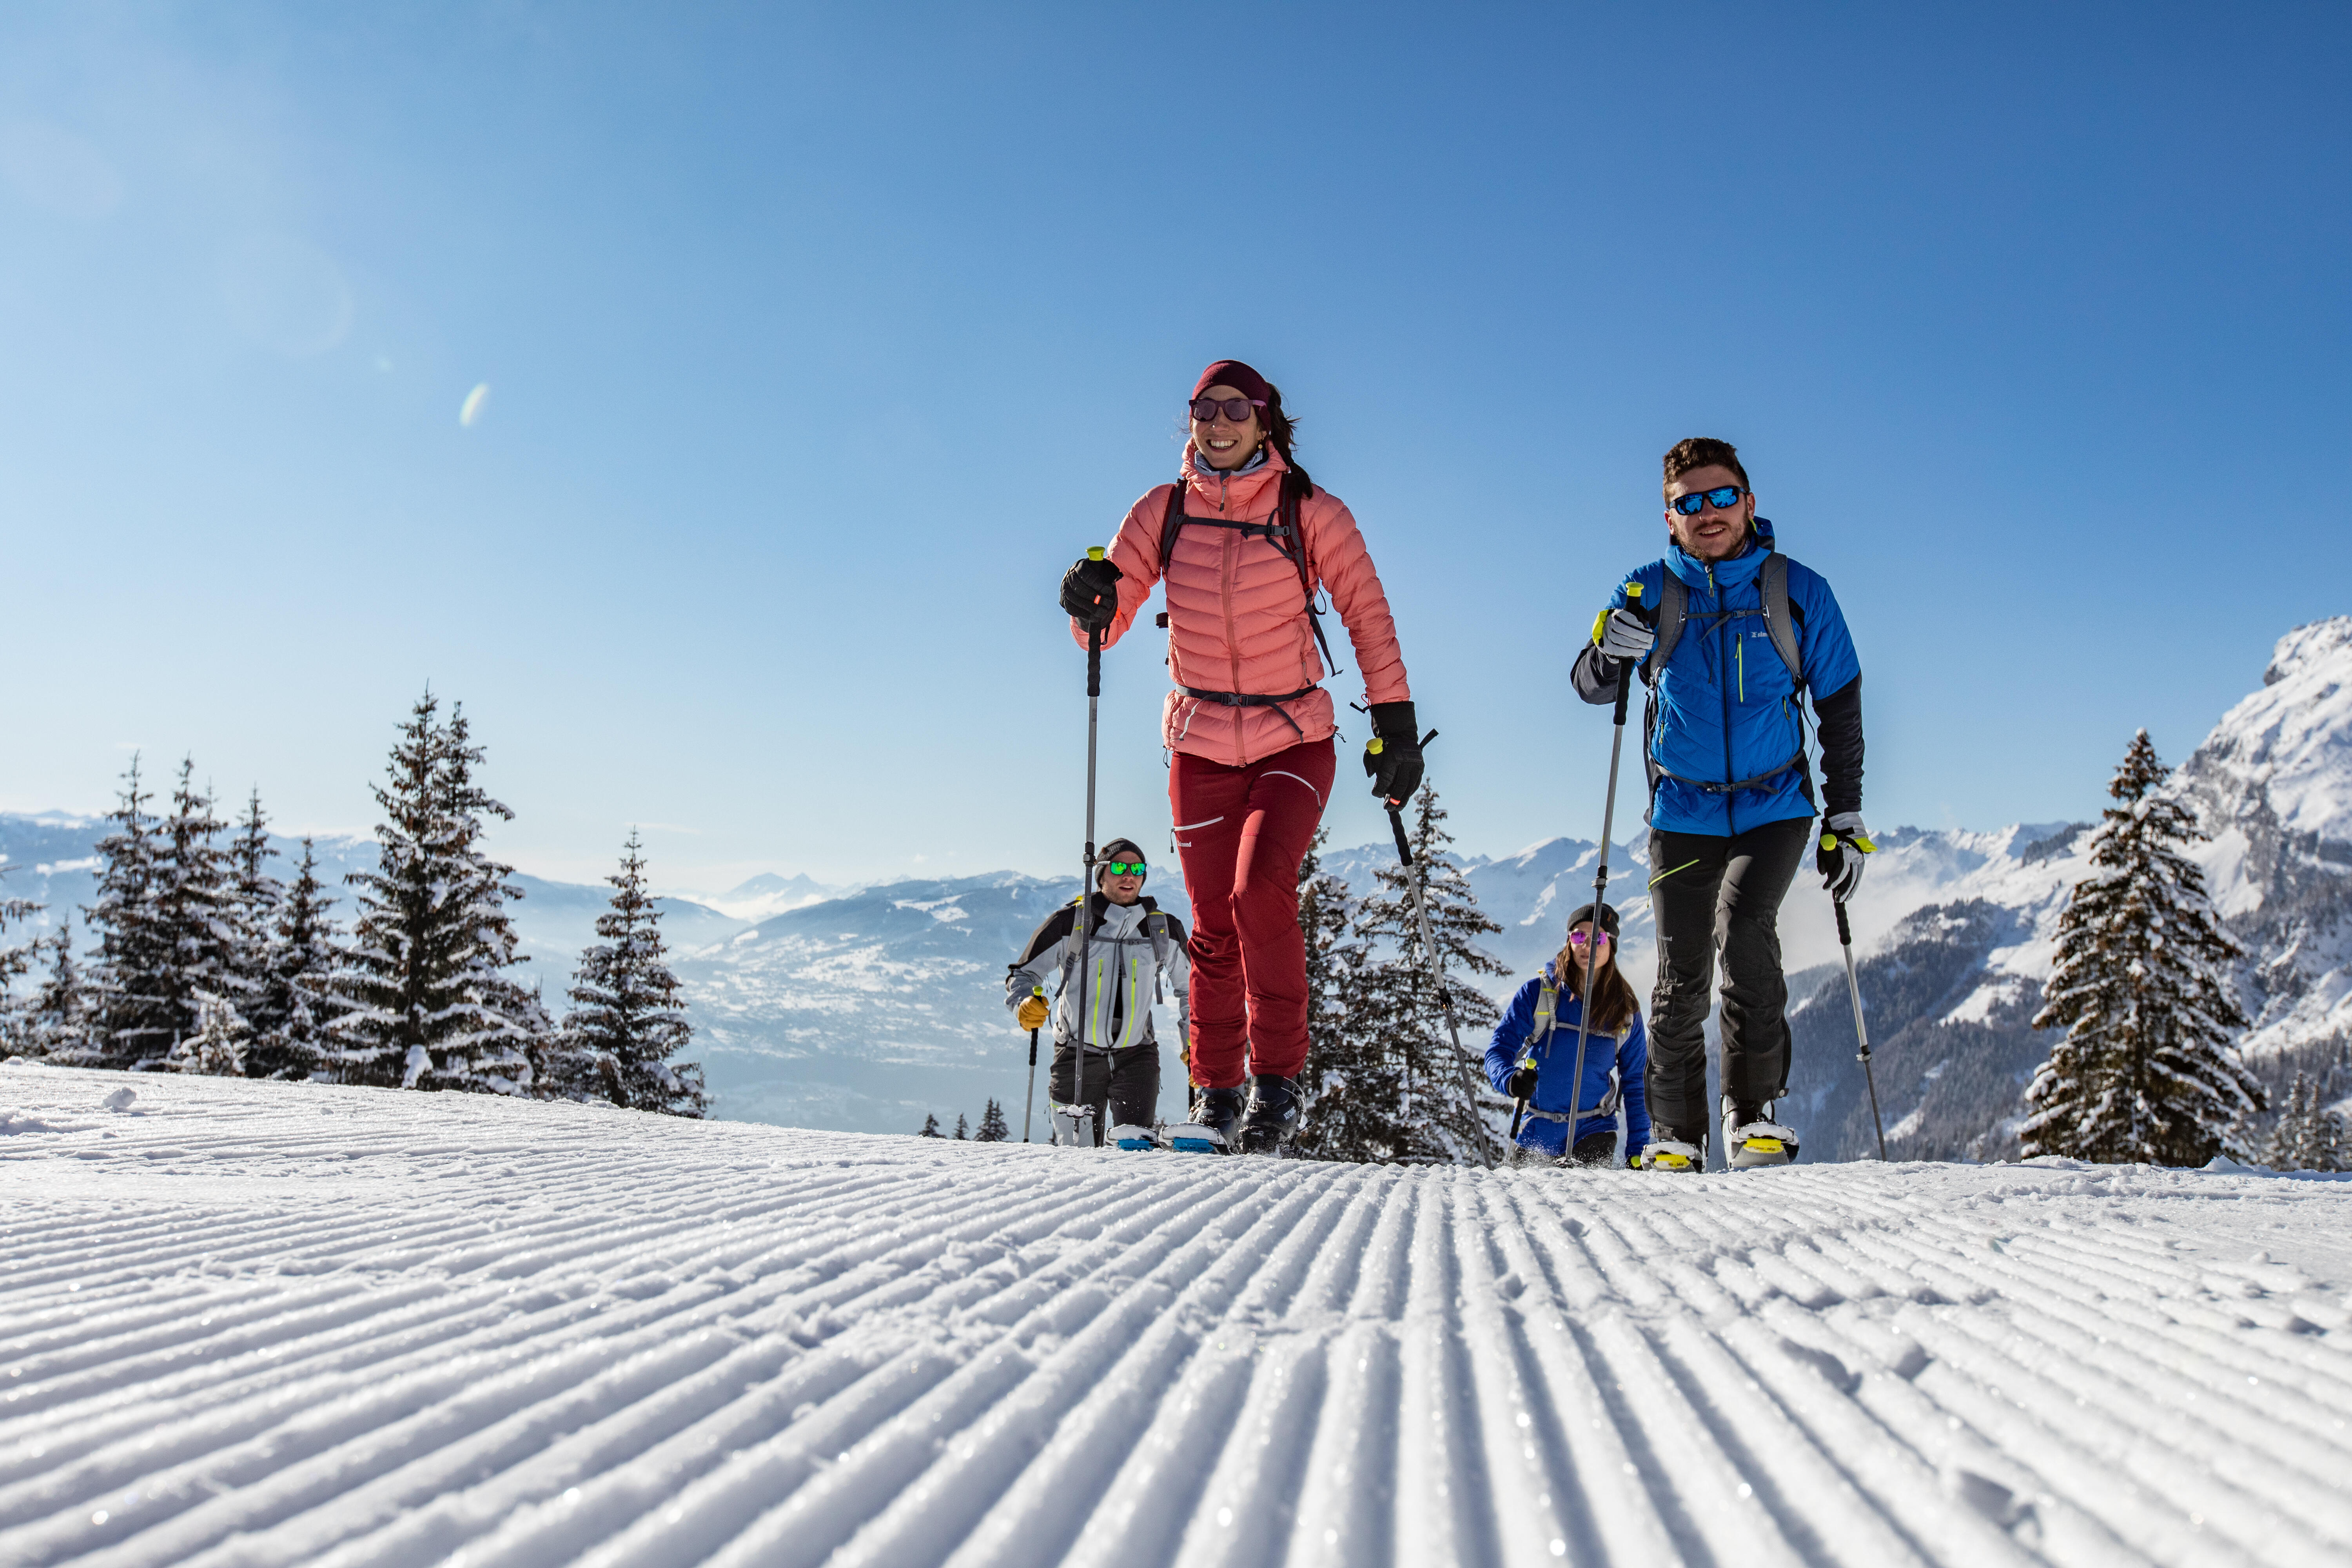 Skis de randonnée avec fixations et peaux -  RT 500 - WEDZE